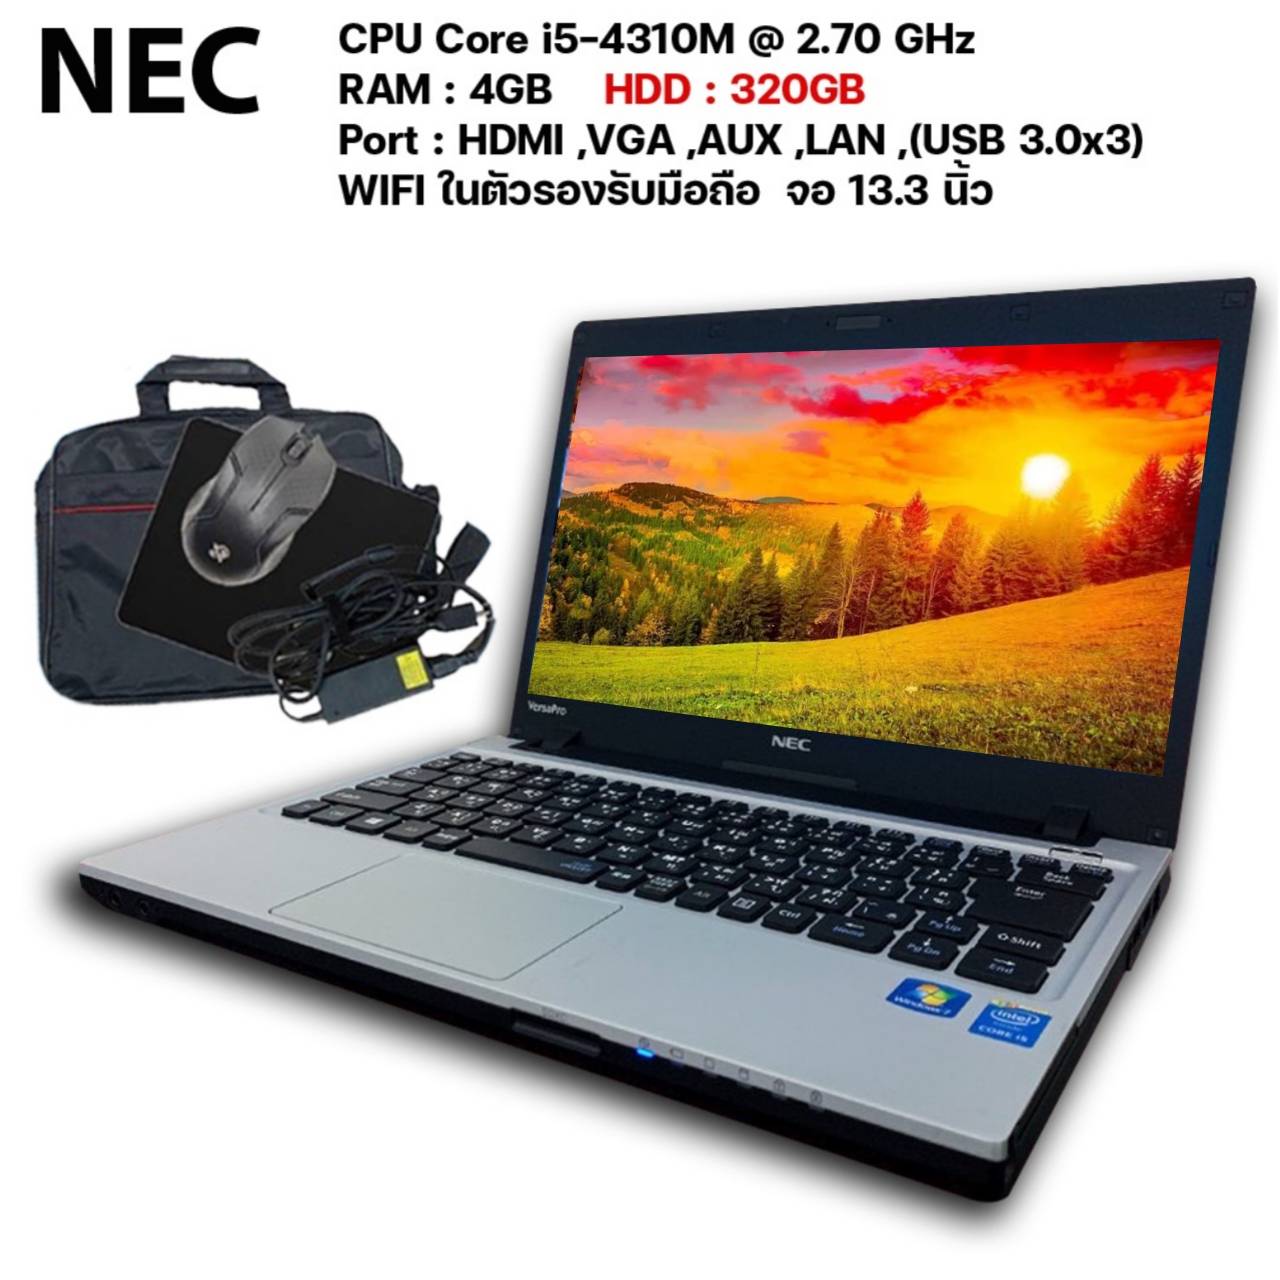 15128円 マーケット NEC VersaPro VB-R PC-VK23TBK674RR Windows10 64bit HDMI Core i5 6200U メモリー8GB HDD500GB 無線LAN B5サイズ モバイル ノートパソコン2007696